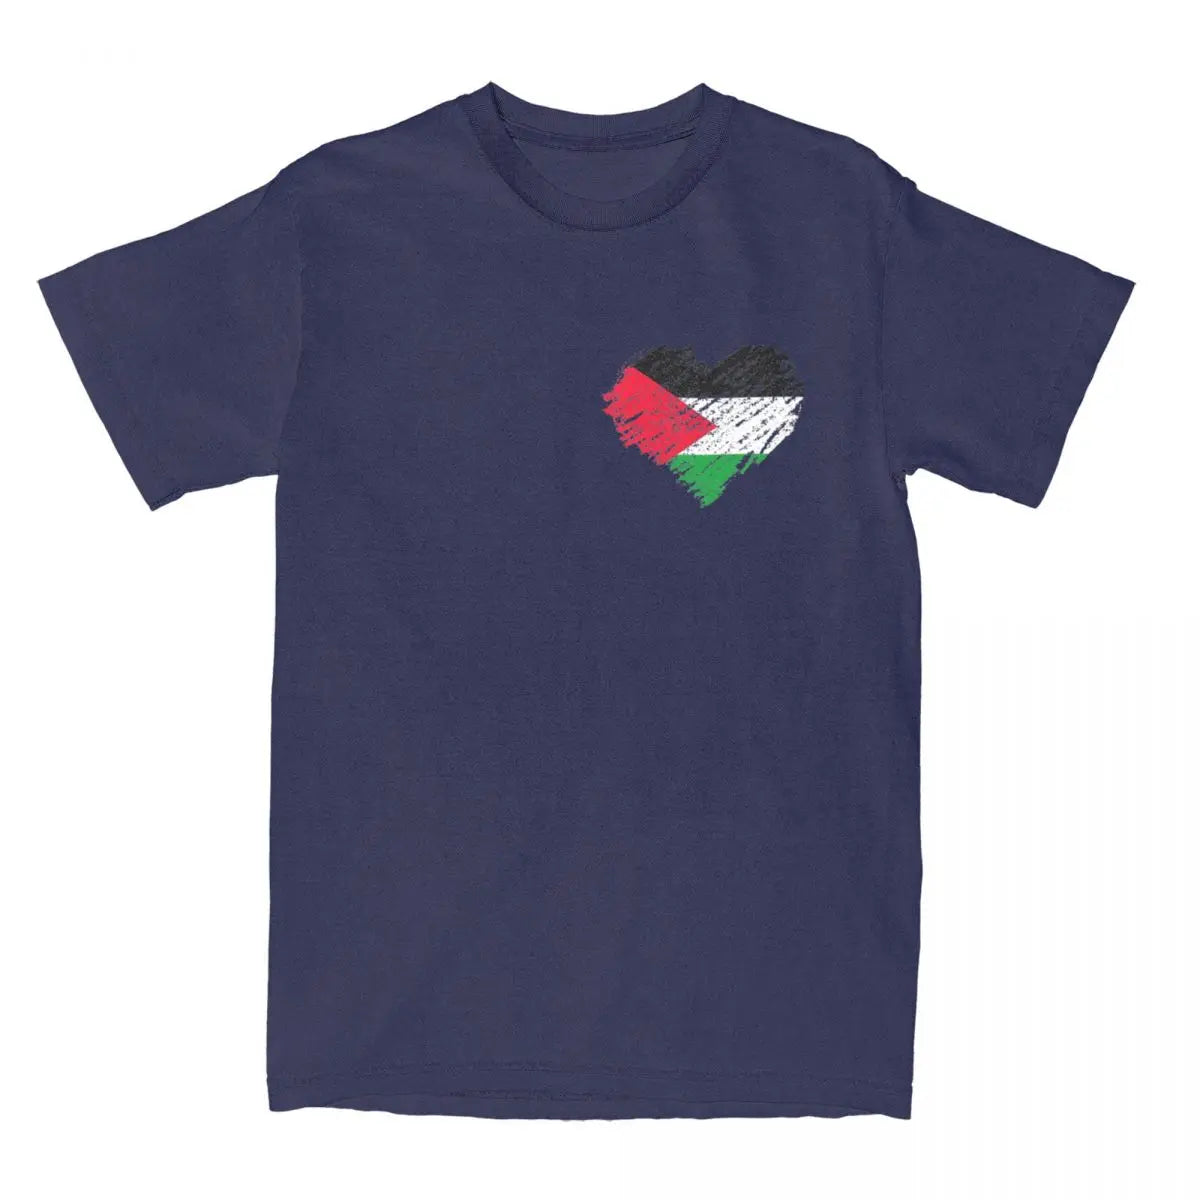 Tee Shirt Palestine